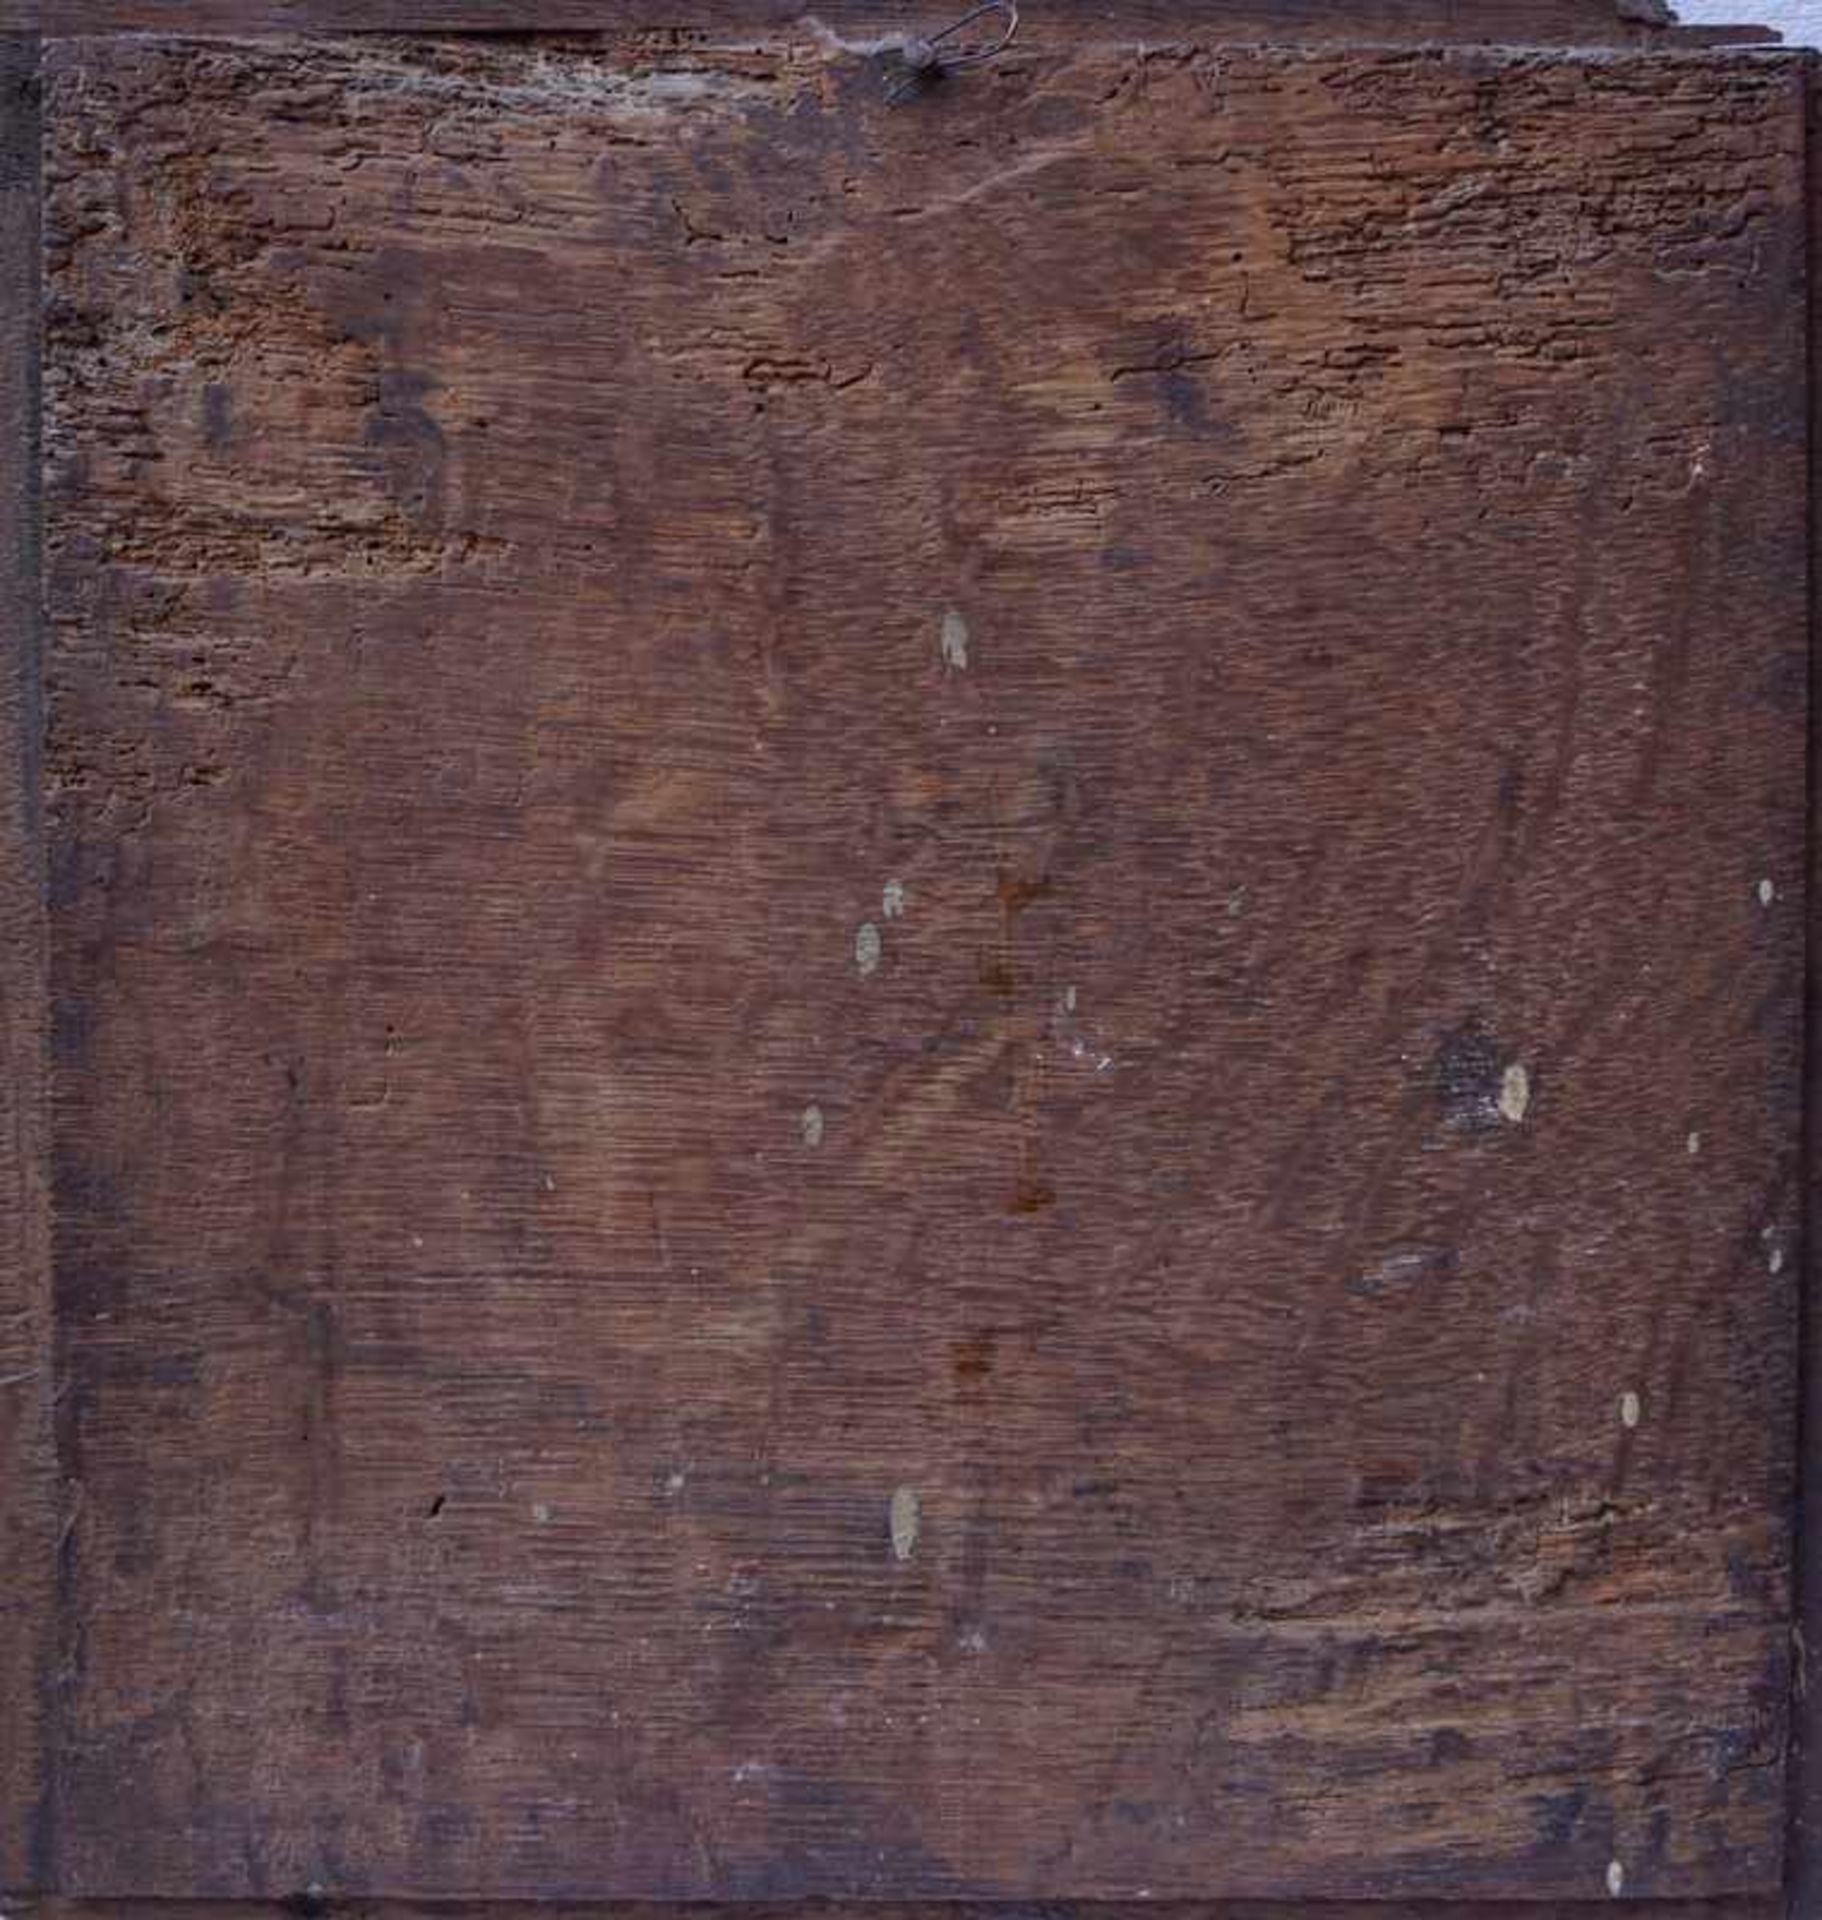 Eichenholzrelief mit Wirtshausszene 1. H. 17. Jhd.Möglicherweise Teil einer Truhe, Maße 32,5 x - Image 2 of 2